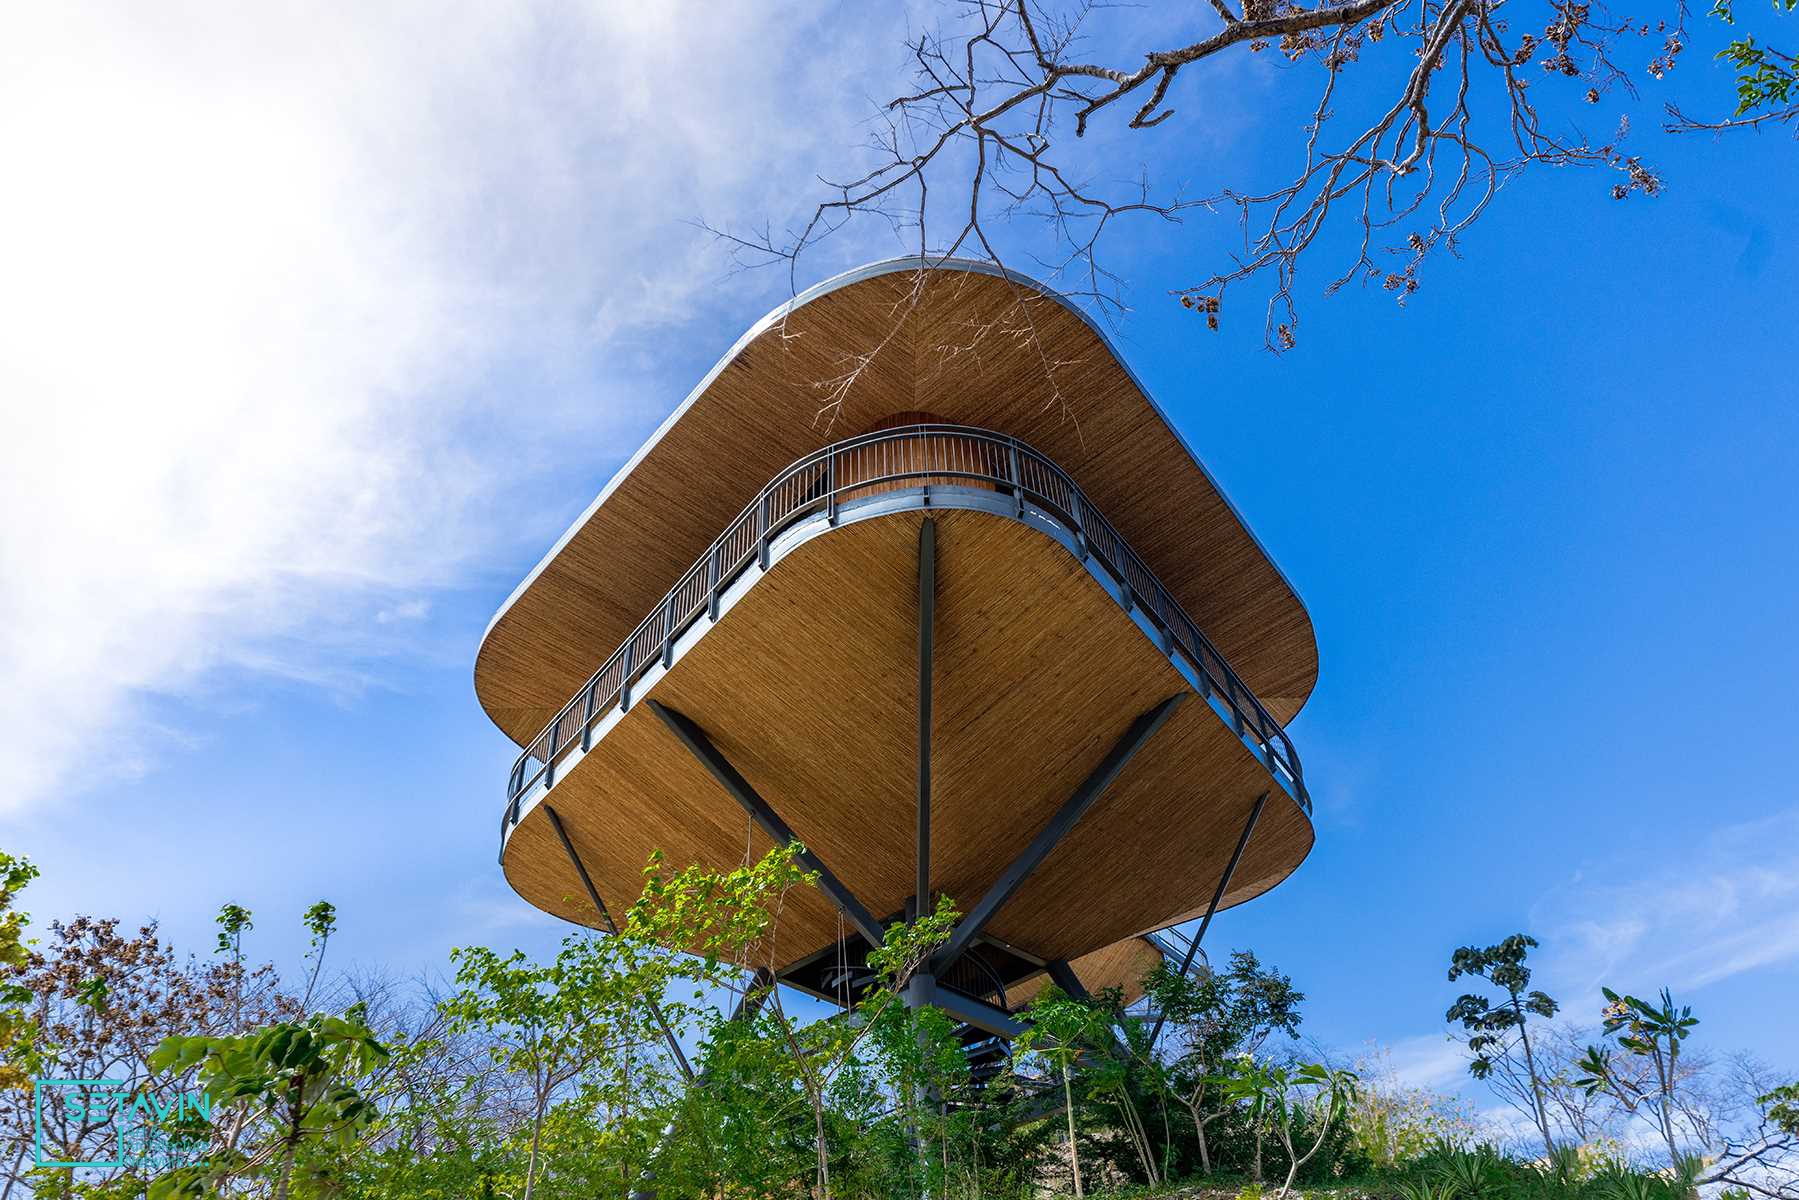 هتل Suitree Experience در کاستاریکا  شامل چندین خانه درختی